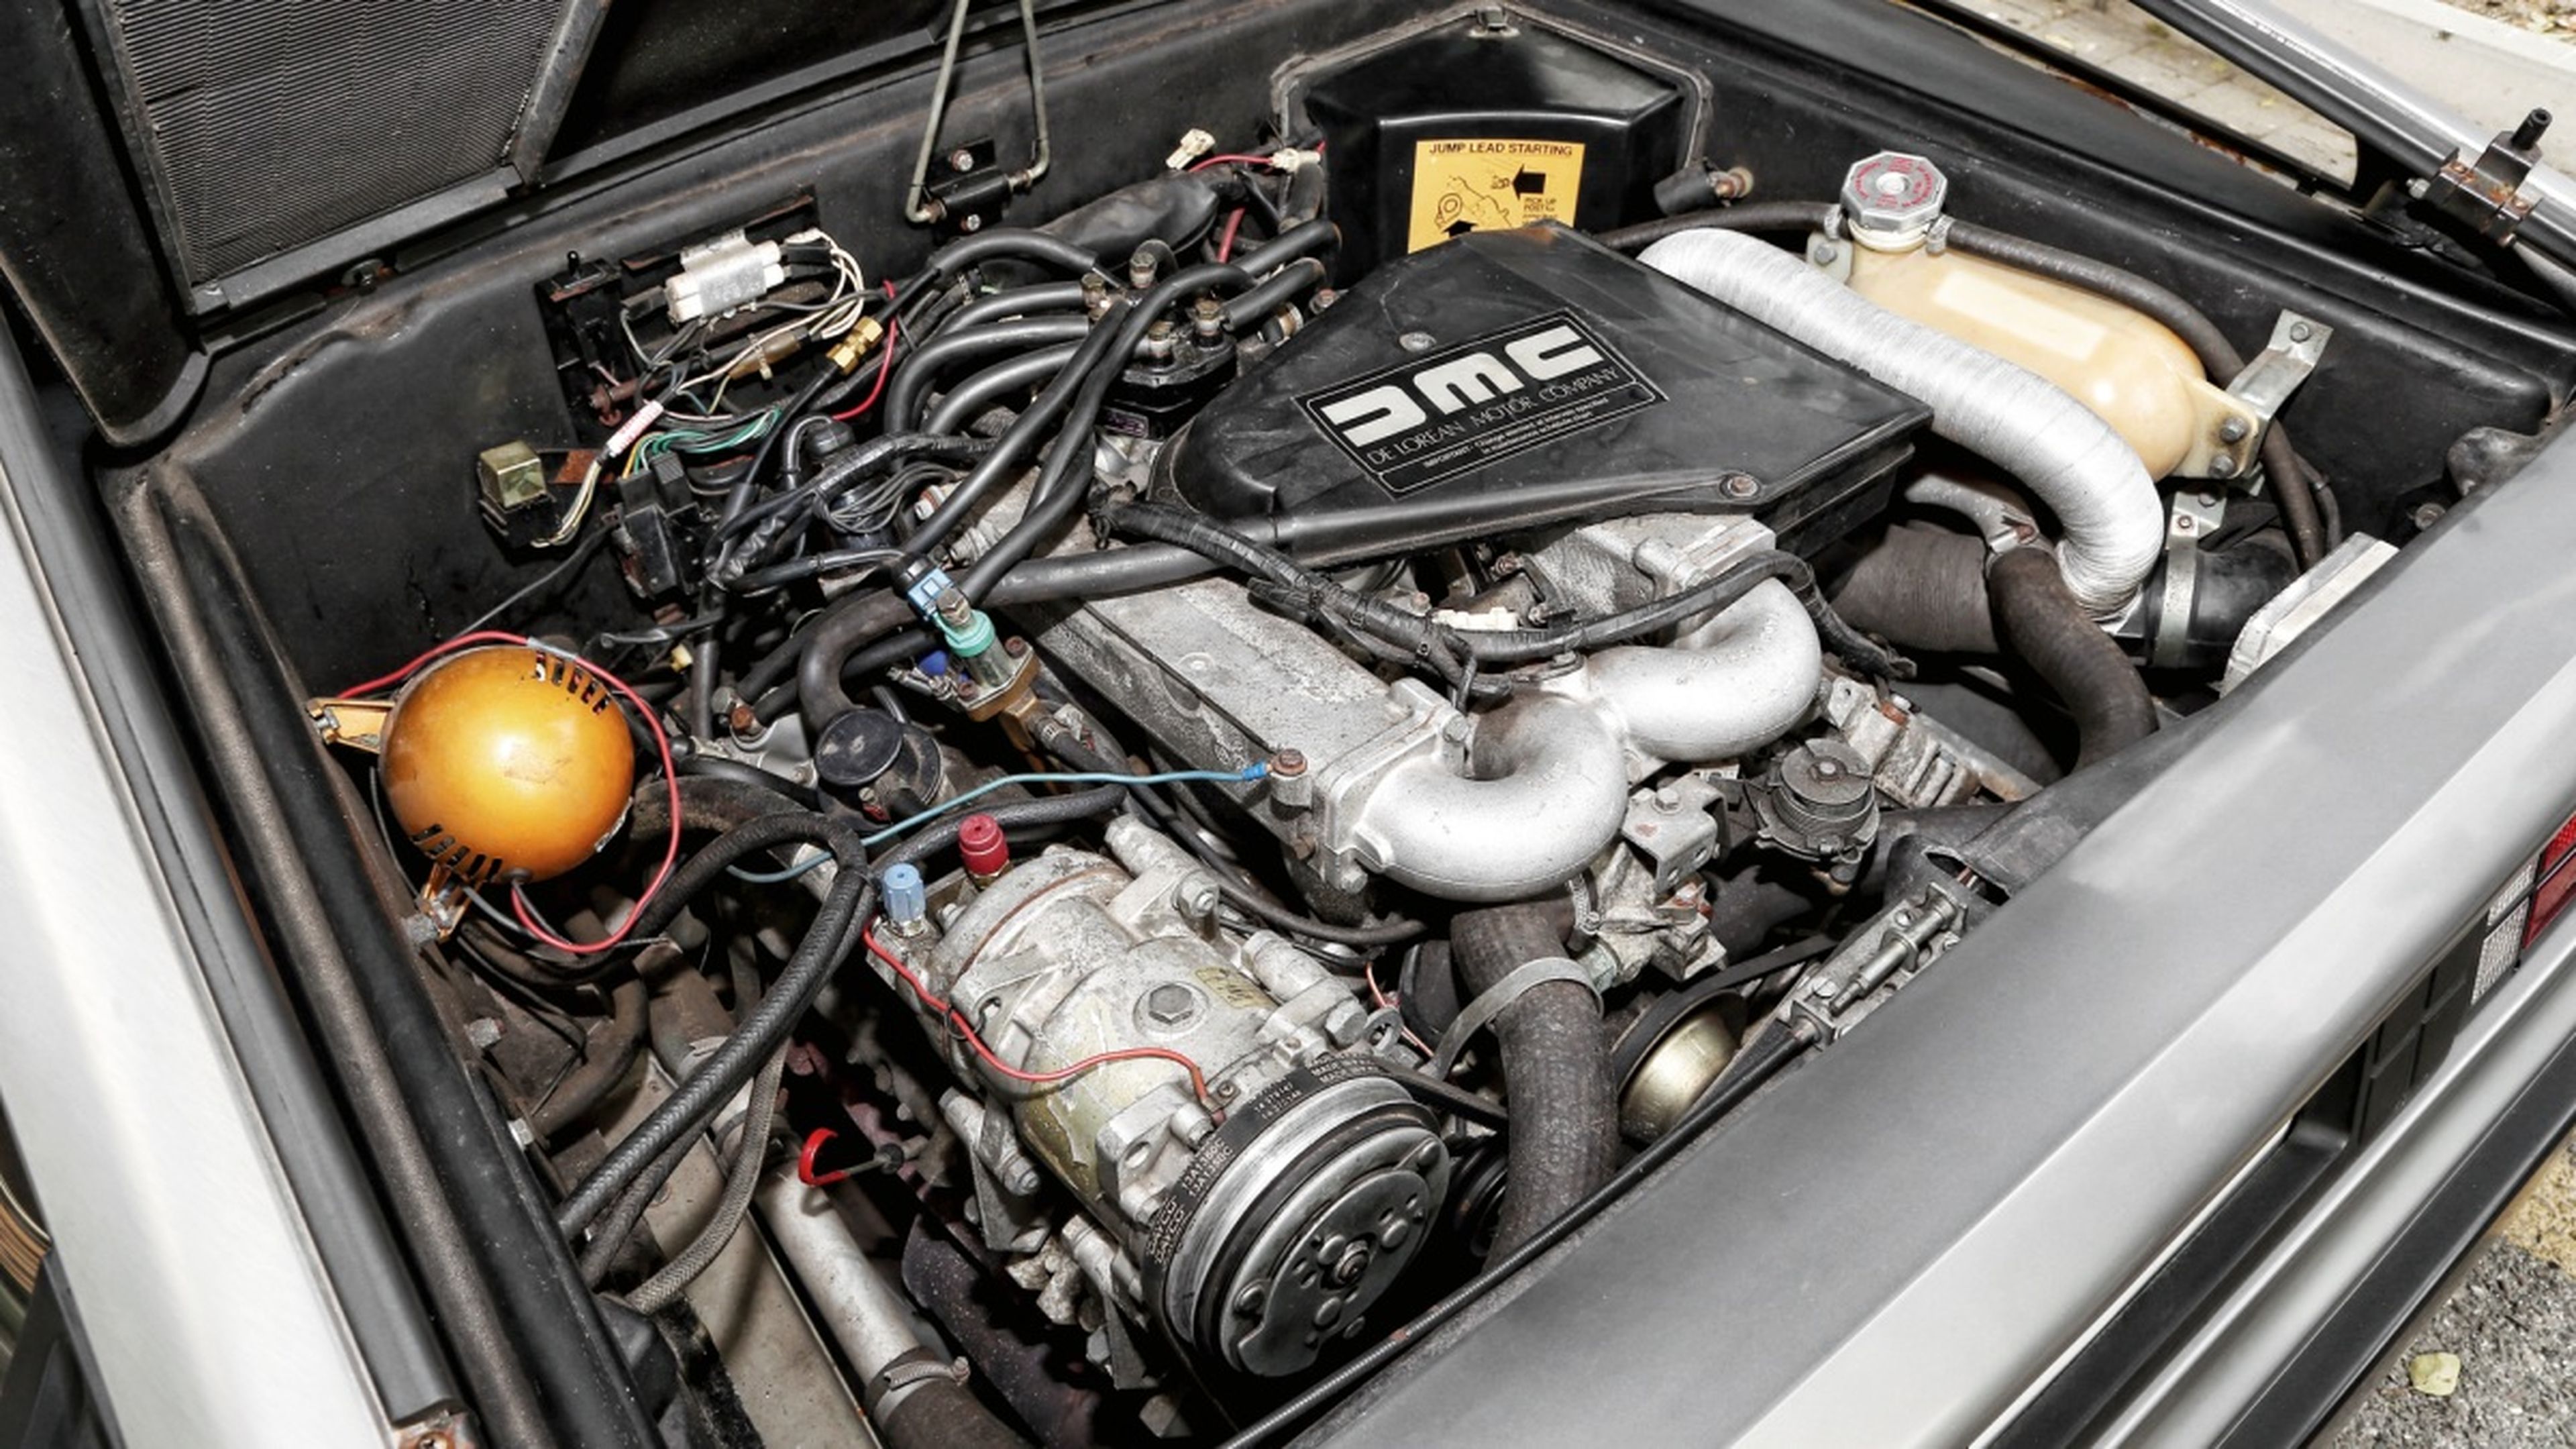 Prueba-DeLorean-DMC-12-motor-PRV-V6